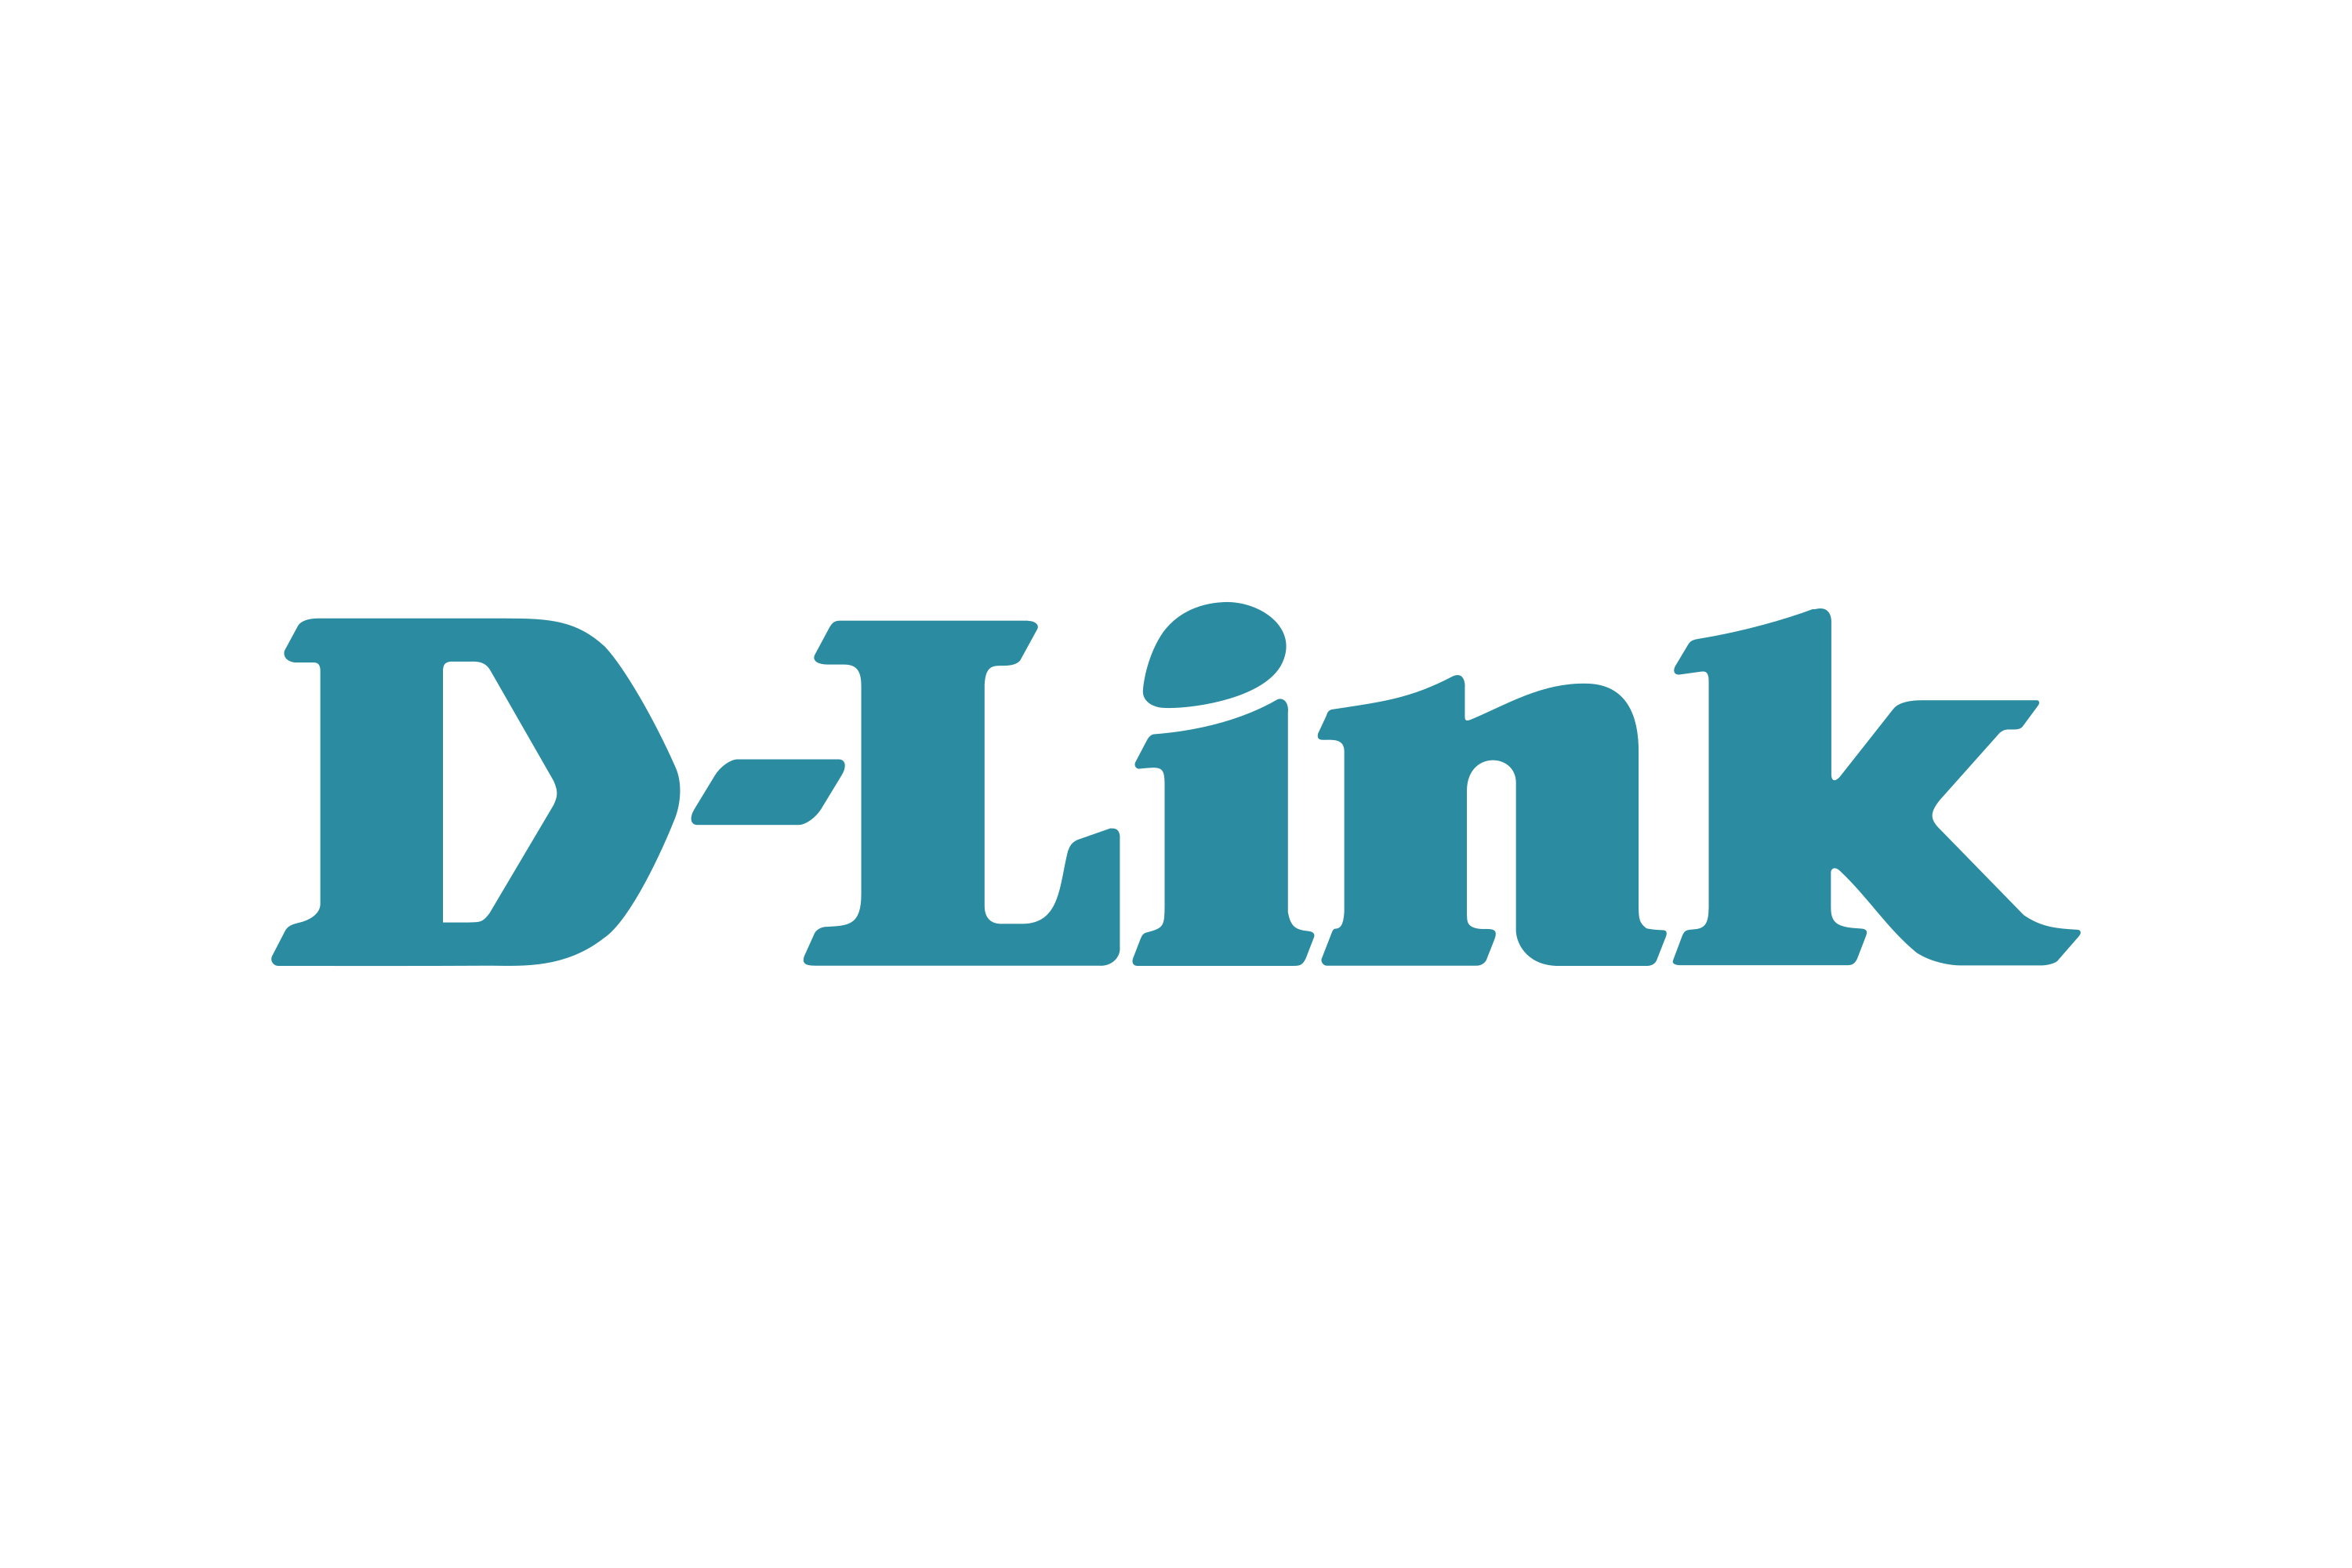 Download D-Link Logo in SVG Vector or PNG File Format - Logo.wine